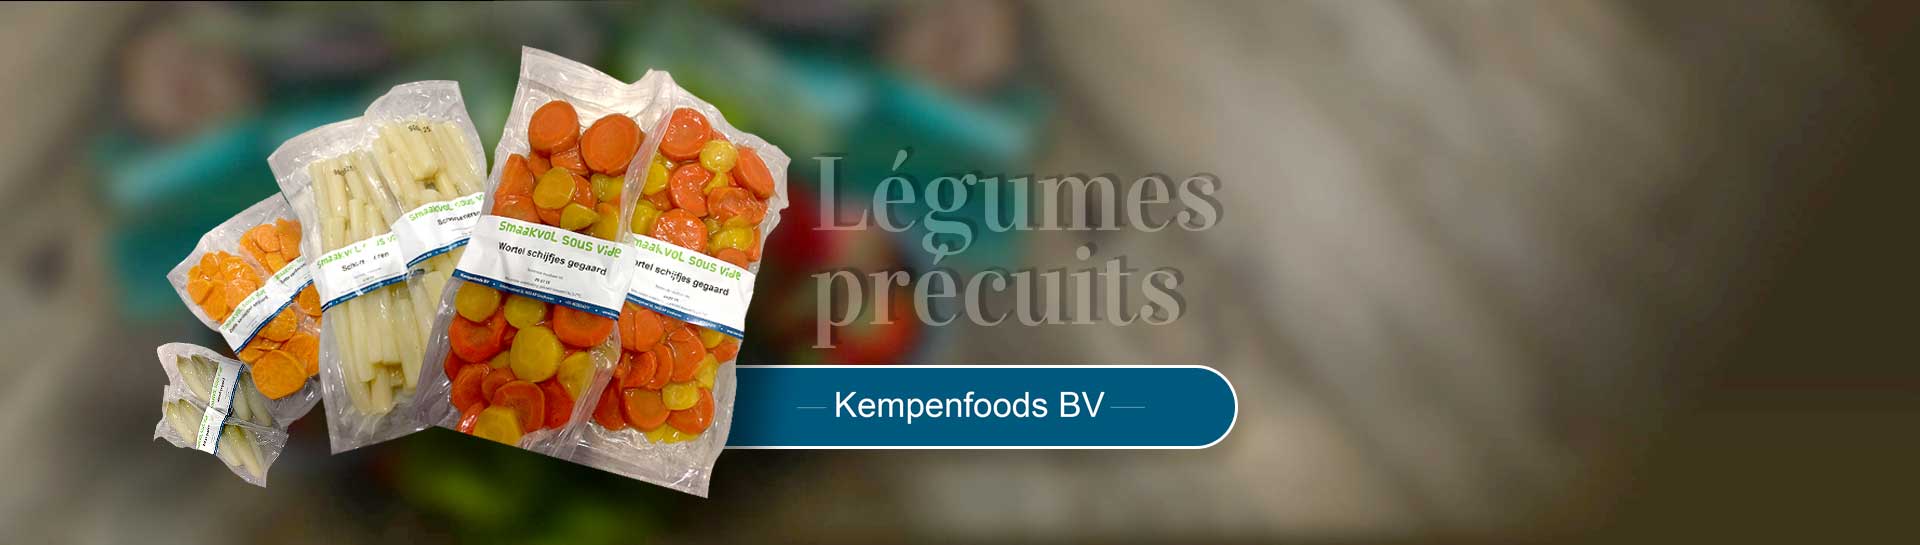 Kempenfoods bv - Légumes précuits